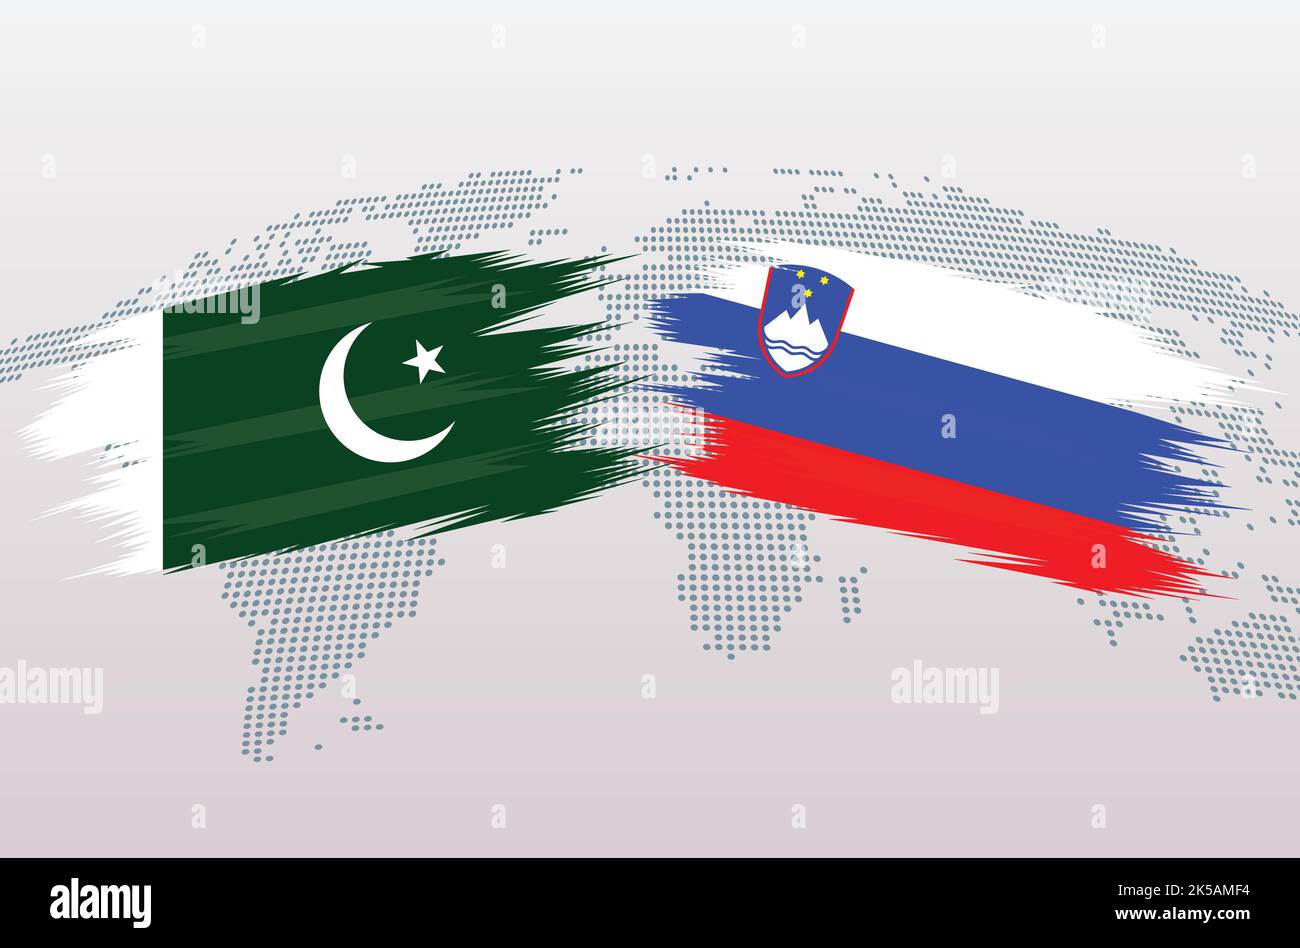 Bandiere Pakistan vs Slovenia. Bandiere della Repubblica islamica del Pakistan vs Slovenia, isolate su sfondo grigio della mappa del mondo. Illustrazione vettoriale. Illustrazione Vettoriale